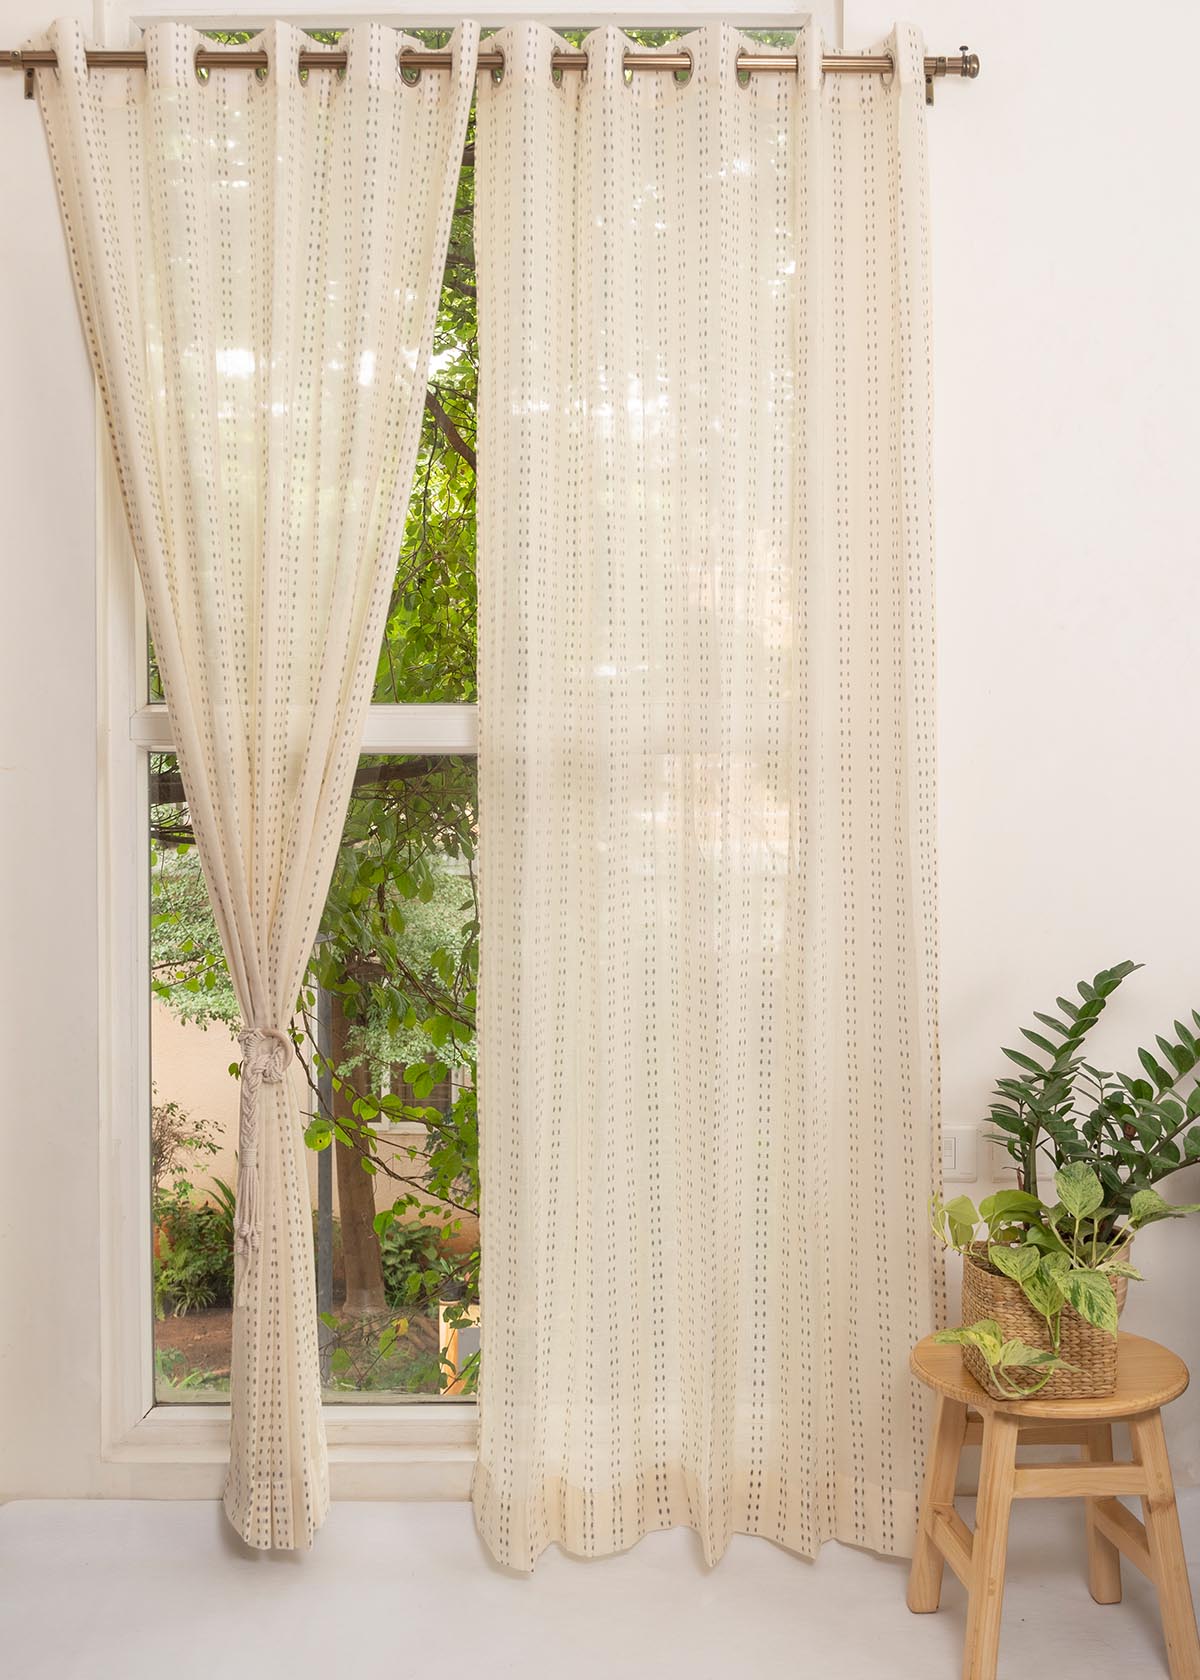 Dew 100% Sheer minimal curtain for Living room & bedroom - Light filtering - Cream